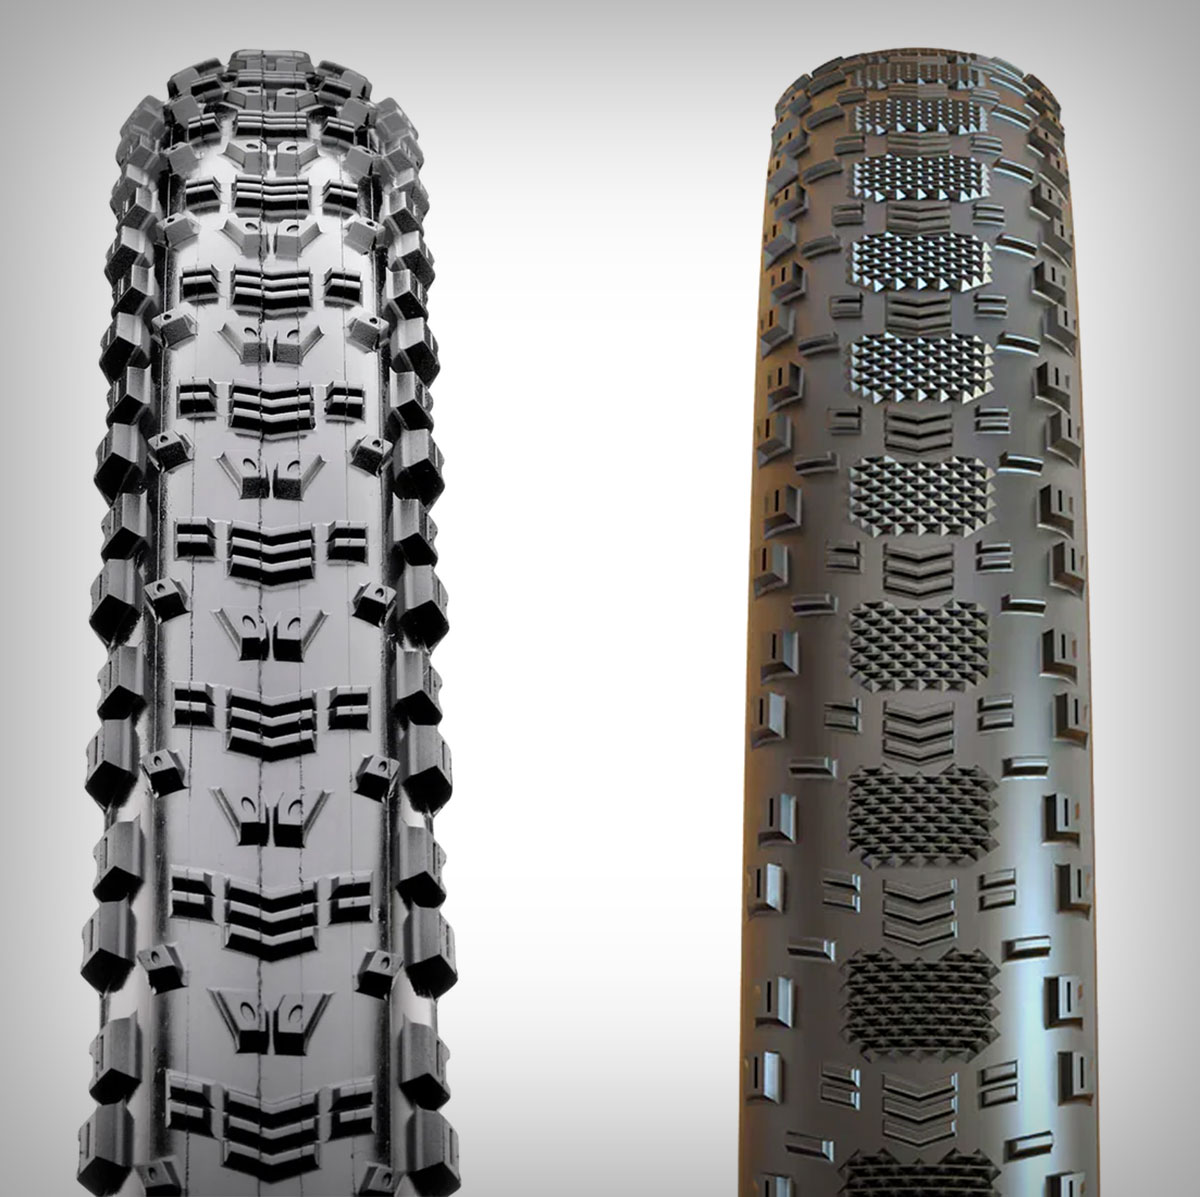 Maxxis pone a la venta las versiones Team Spec de los neumáticos Aspen y Aspen ST, específicos para competición